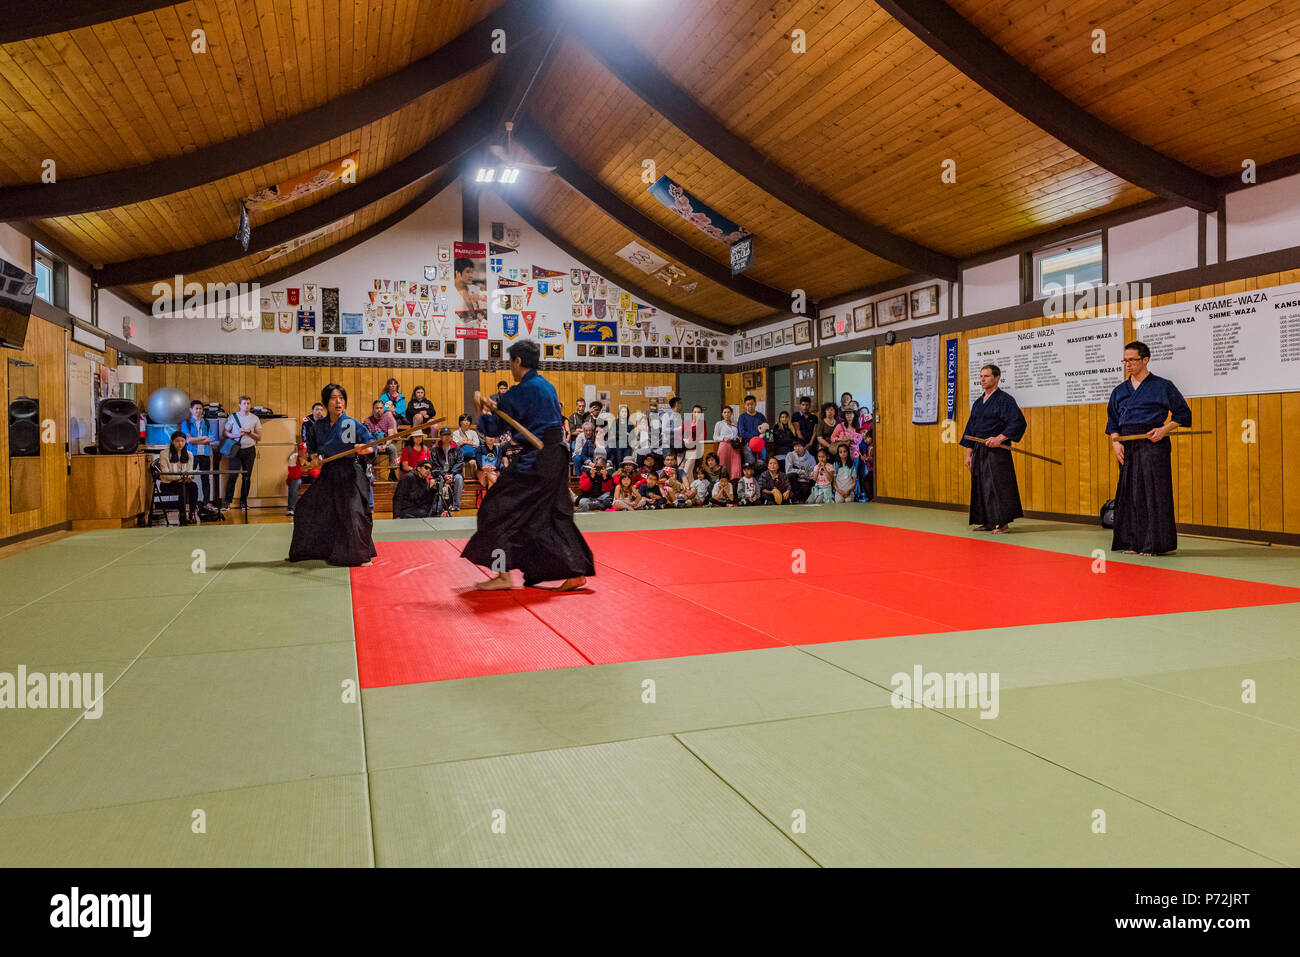 Démonstration de Kendo, art martial Japonais traditionnel du sabre (kenjutsu) avec l'aide d'épées en bambou, Steveston, Richmond, British Columbia, Canada Banque D'Images